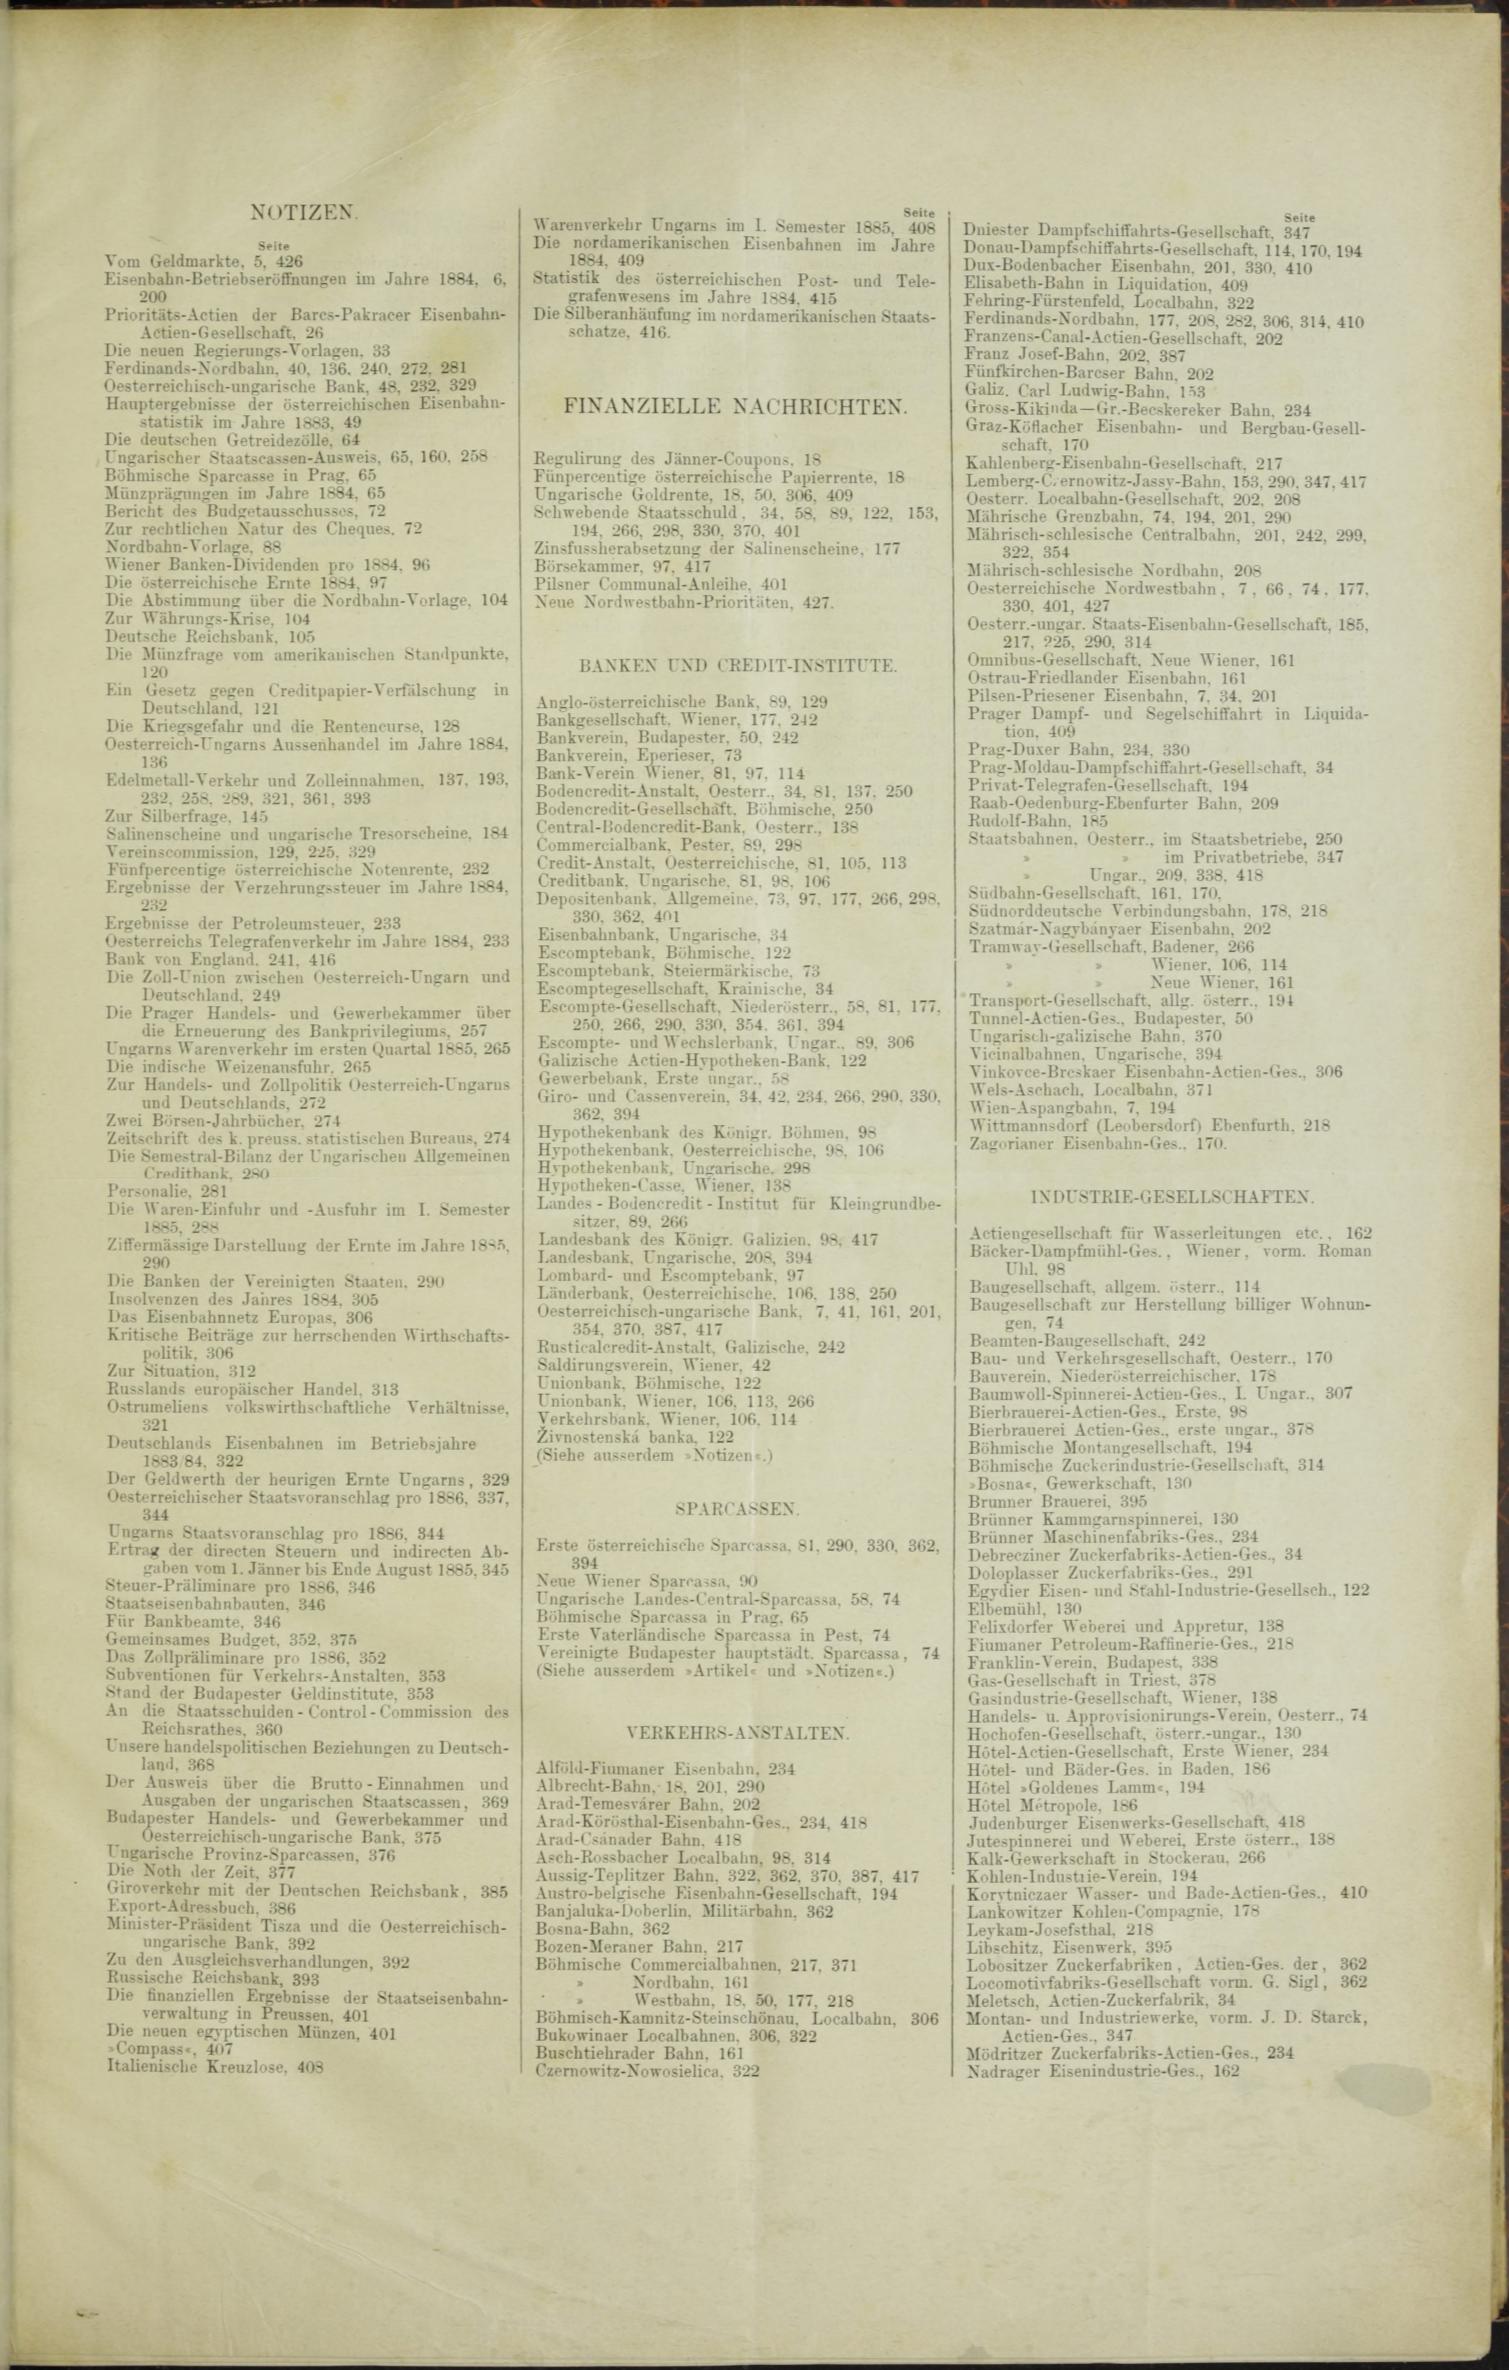 Der Tresor 09.04.1885 - Seite 11